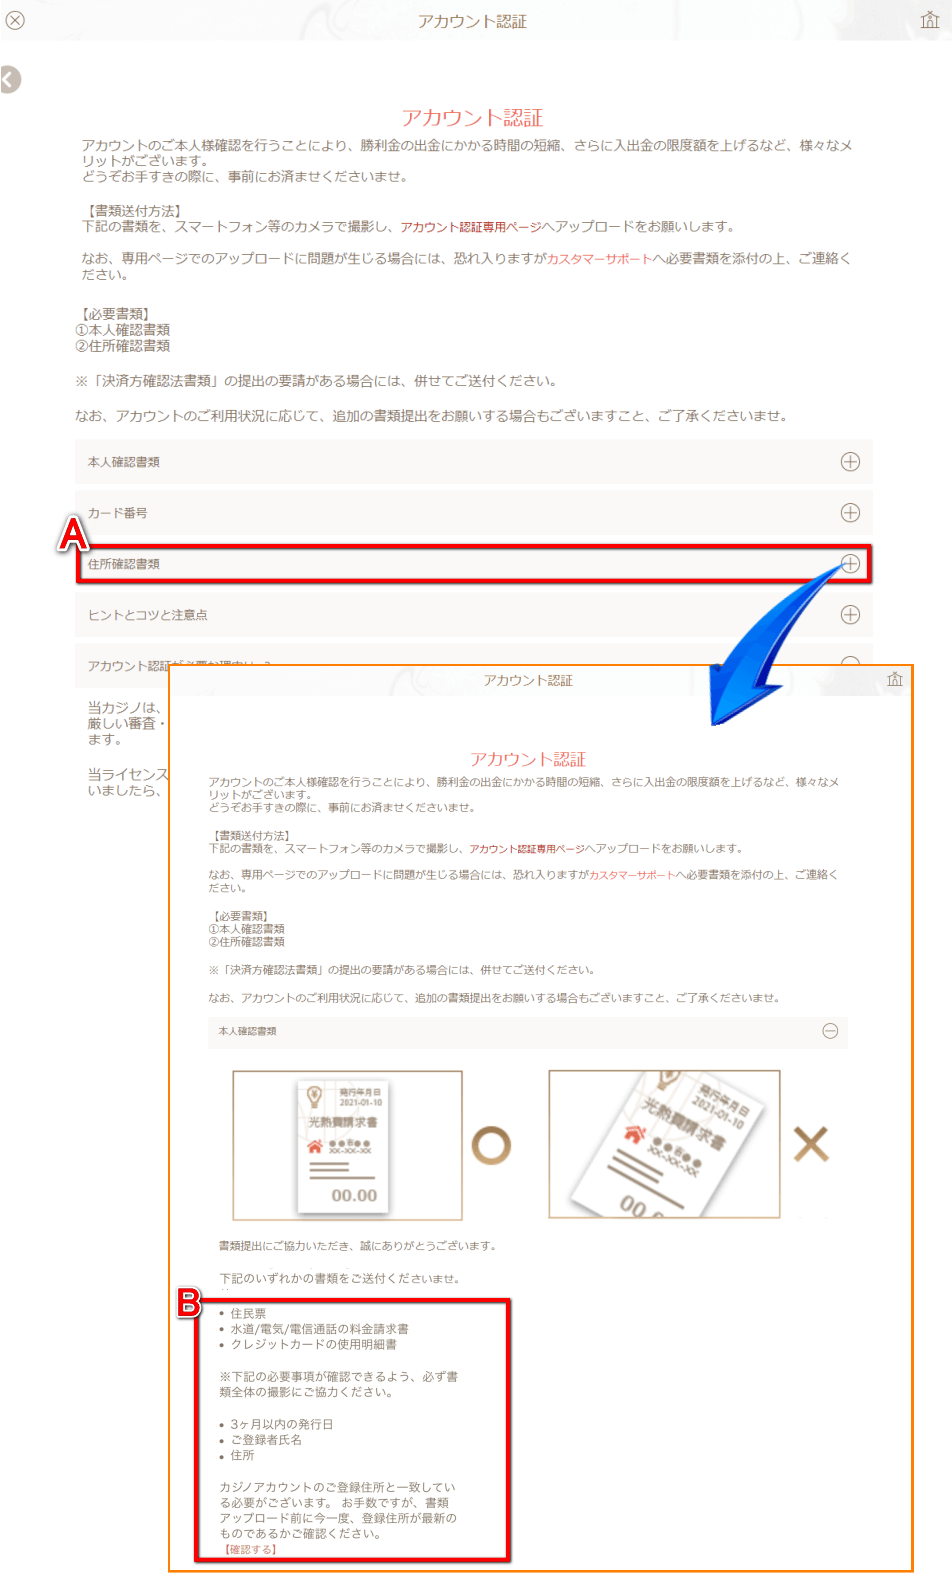 遊雅堂アカウント認証の住所確認書類の詳細